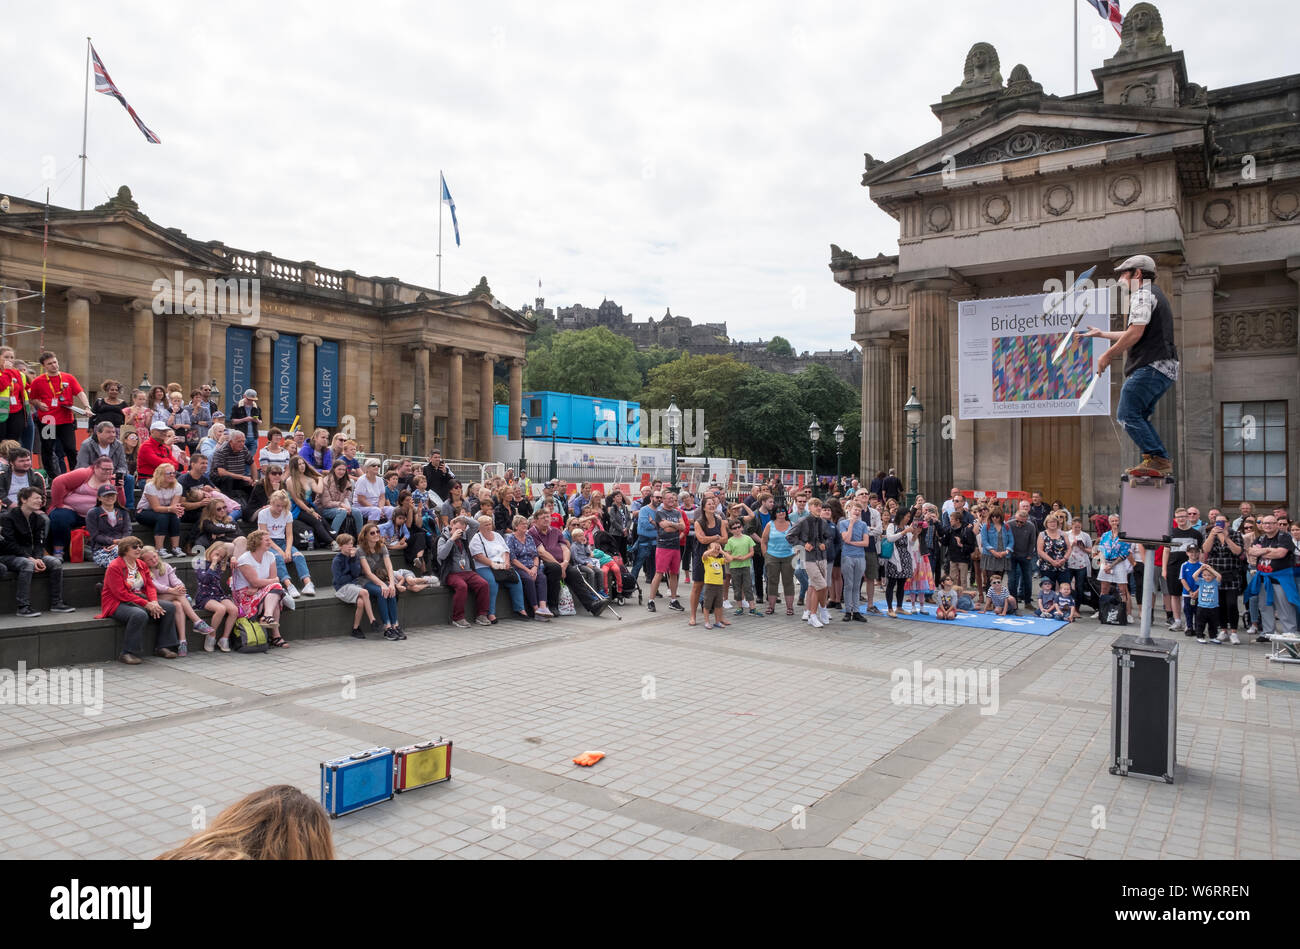 Un artista di strada intrattiene la folla sul Mound a Edimburgo, parte del Festival di Edimburgo Fringe, il più grande festival artistico del mondo. Foto Stock